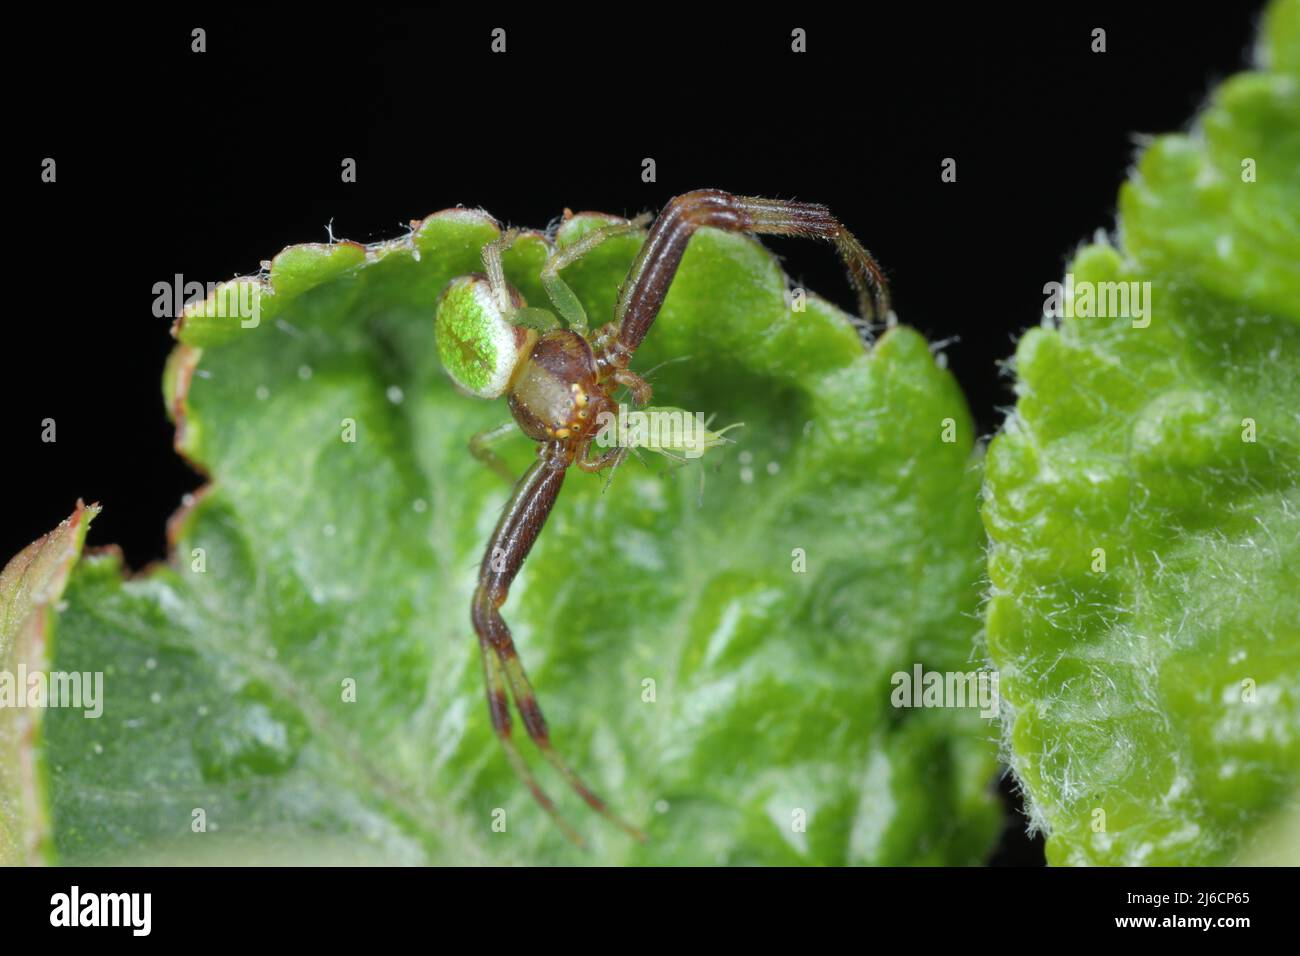 Una araña con un áfido cazado en una hoja verde. Las arañas son enemigos naturales de muchas plagas de plantas. Foto de stock